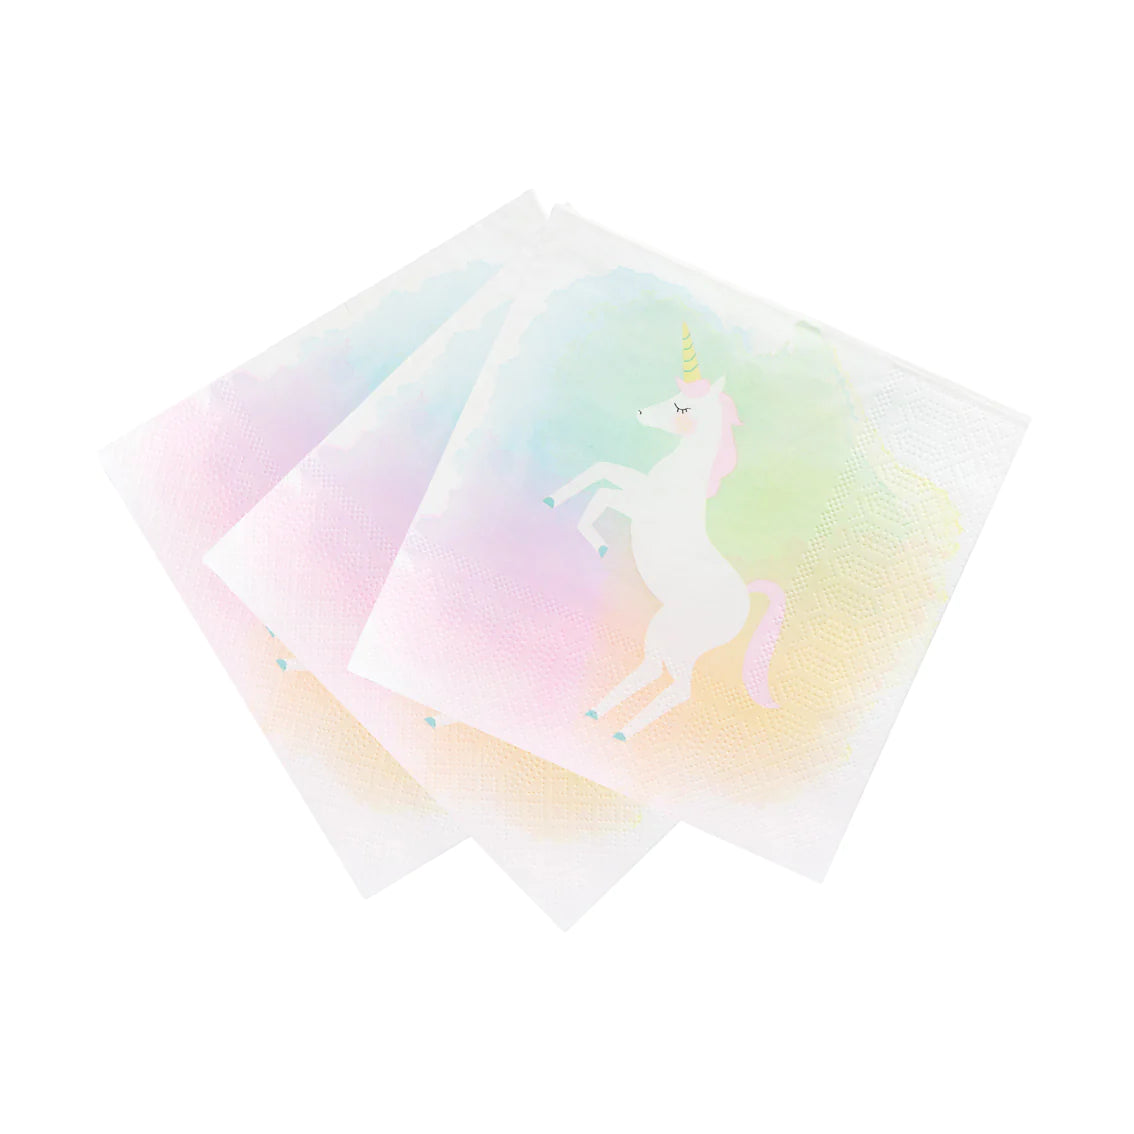 Servilletas de papel reciclables en colores pastel Unicornio - Paquete de 20